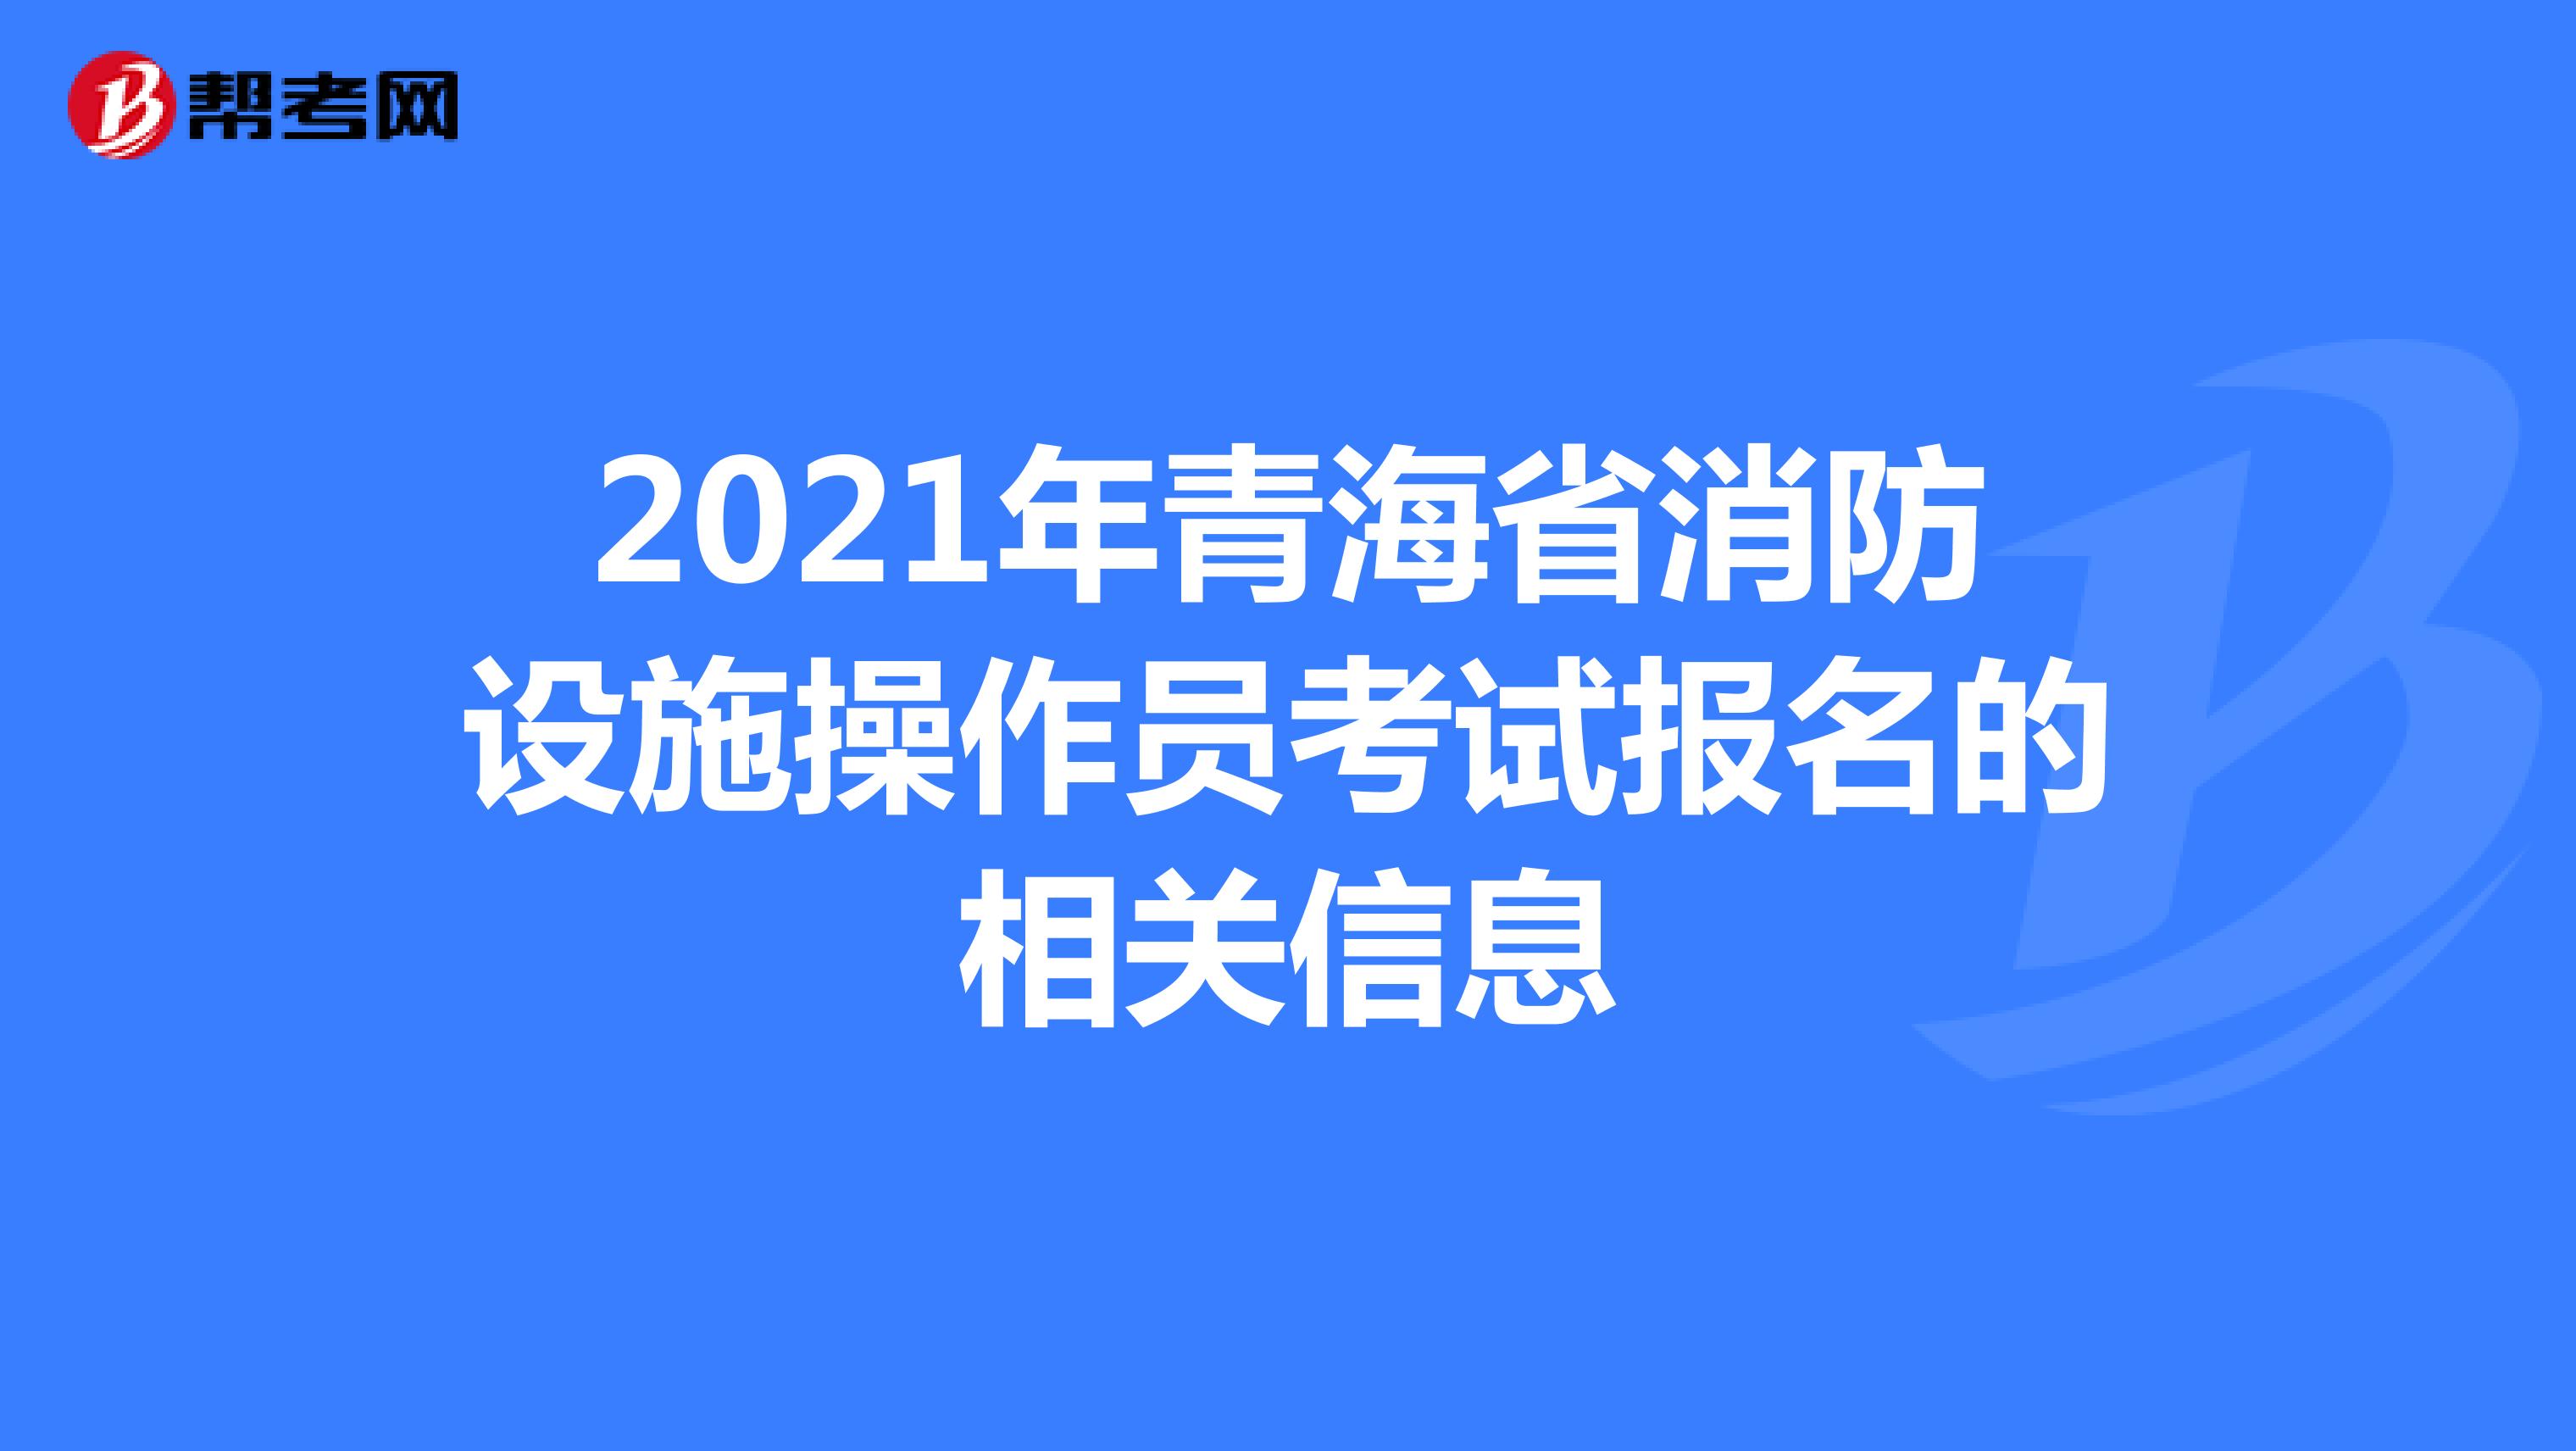 2021年青海省消防设施操作员考试报名的相关信息